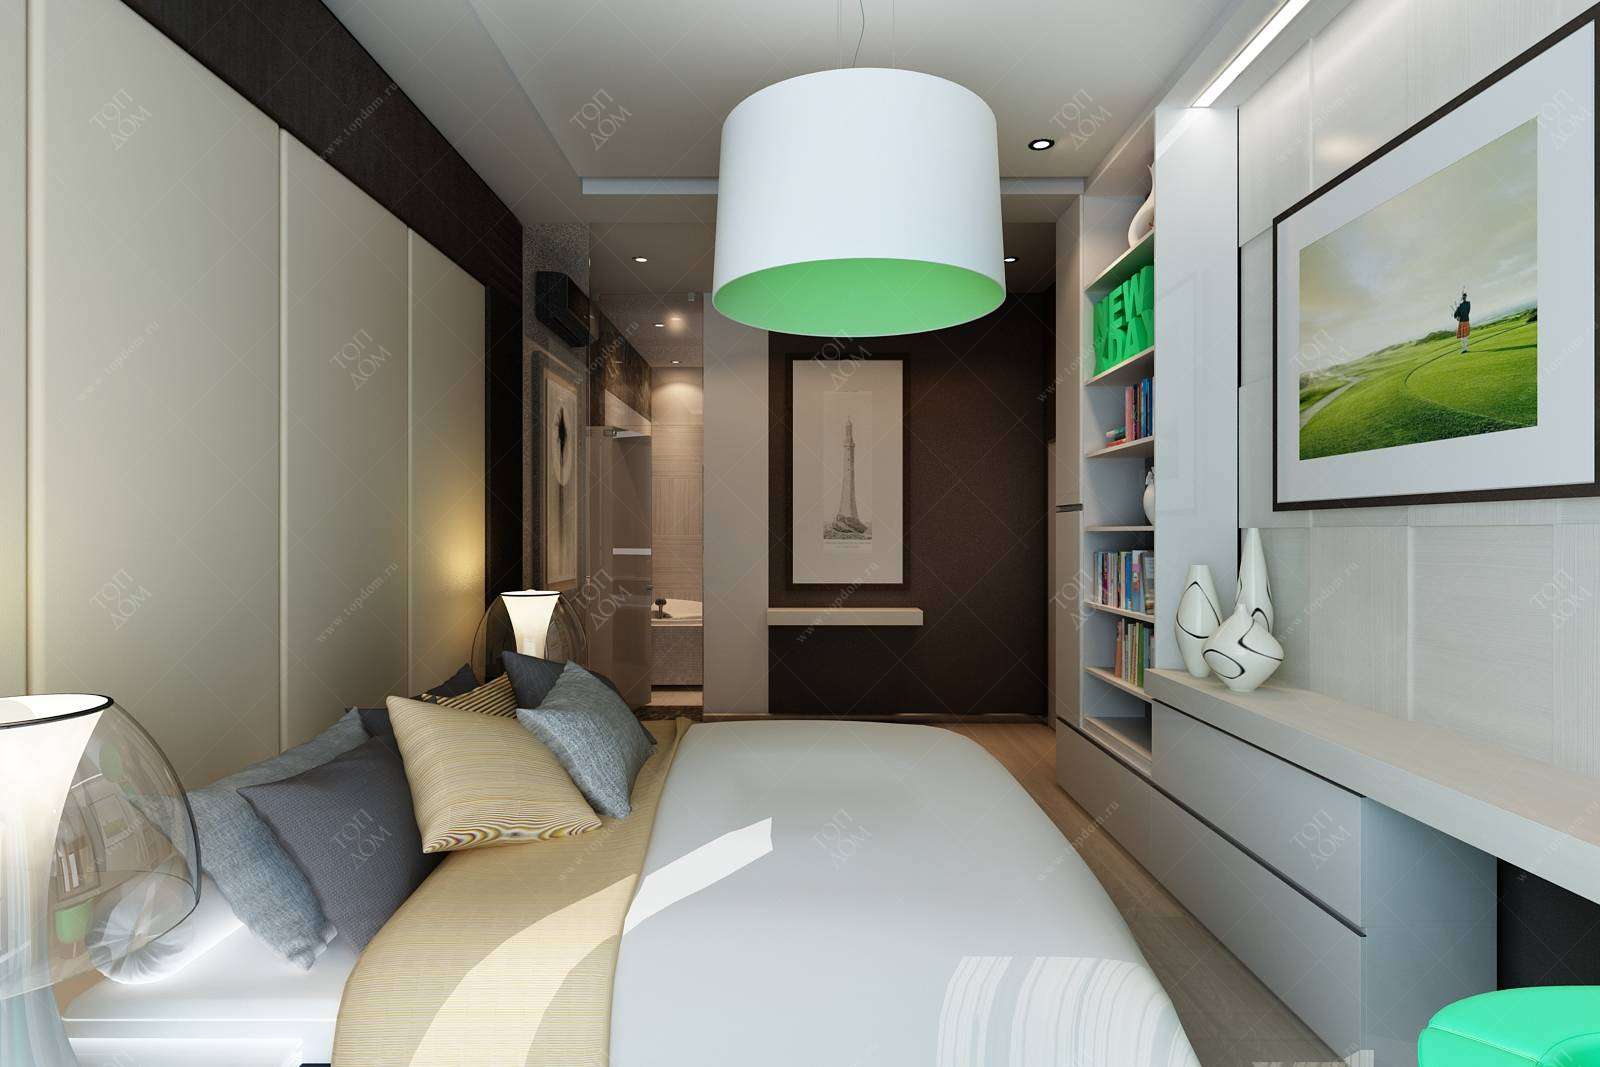 Как обставить маленькую спальню 47 фото идей интерьера для маленькой спальни комнаты, дизайн небольшой, но уютной спальни